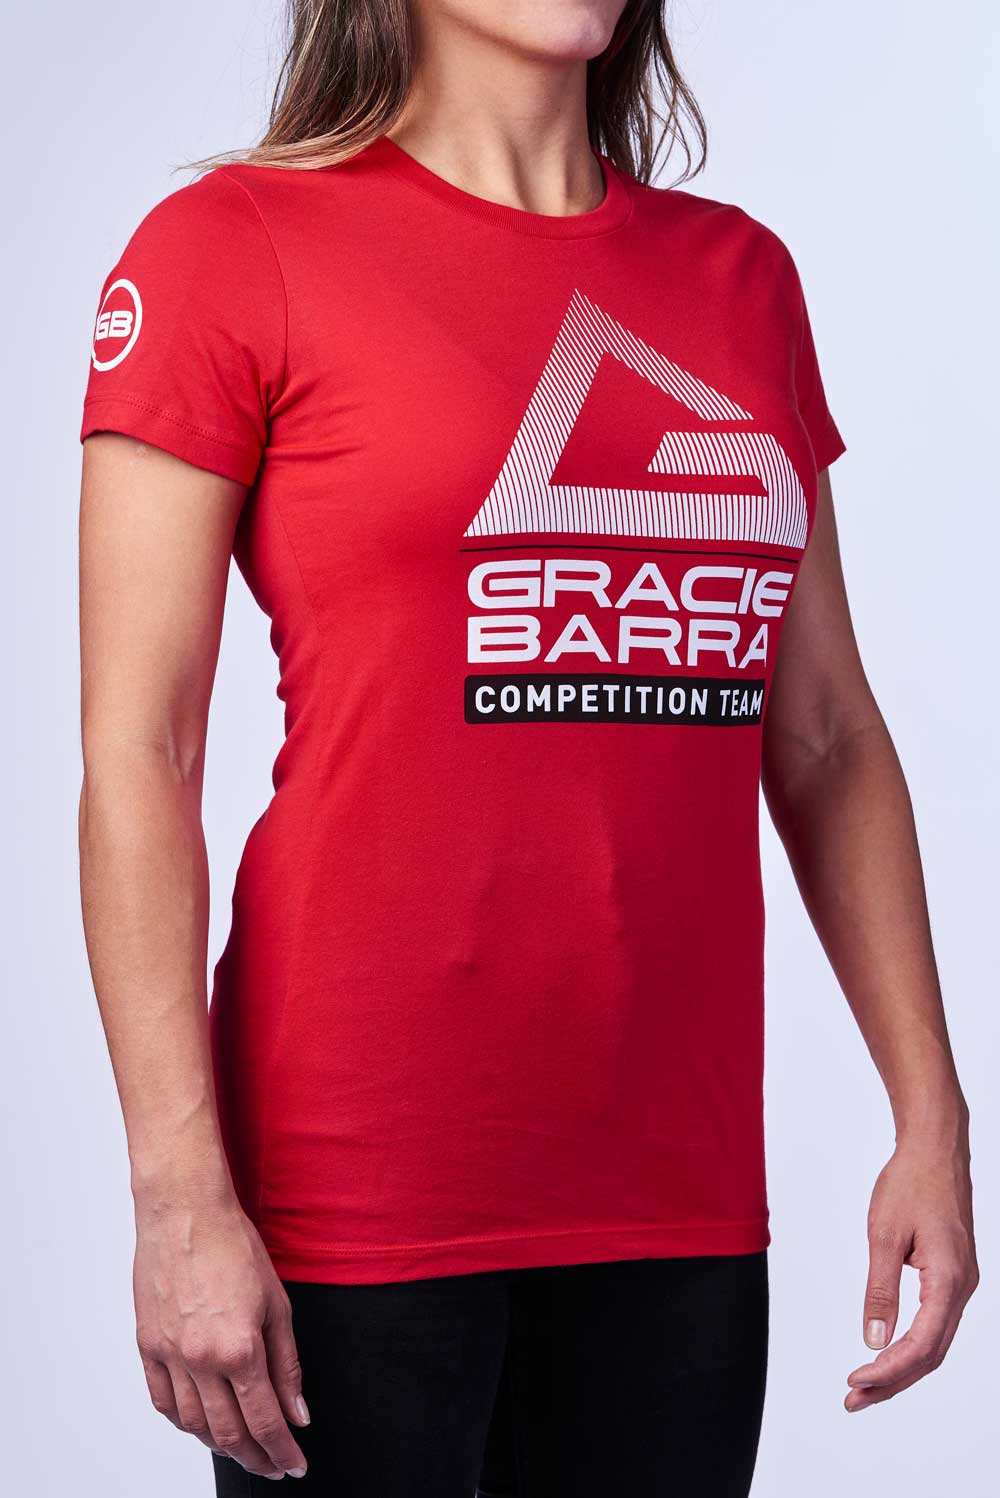 2020 Comp Team Womens Tshirt By Adidas Red Gb Wear